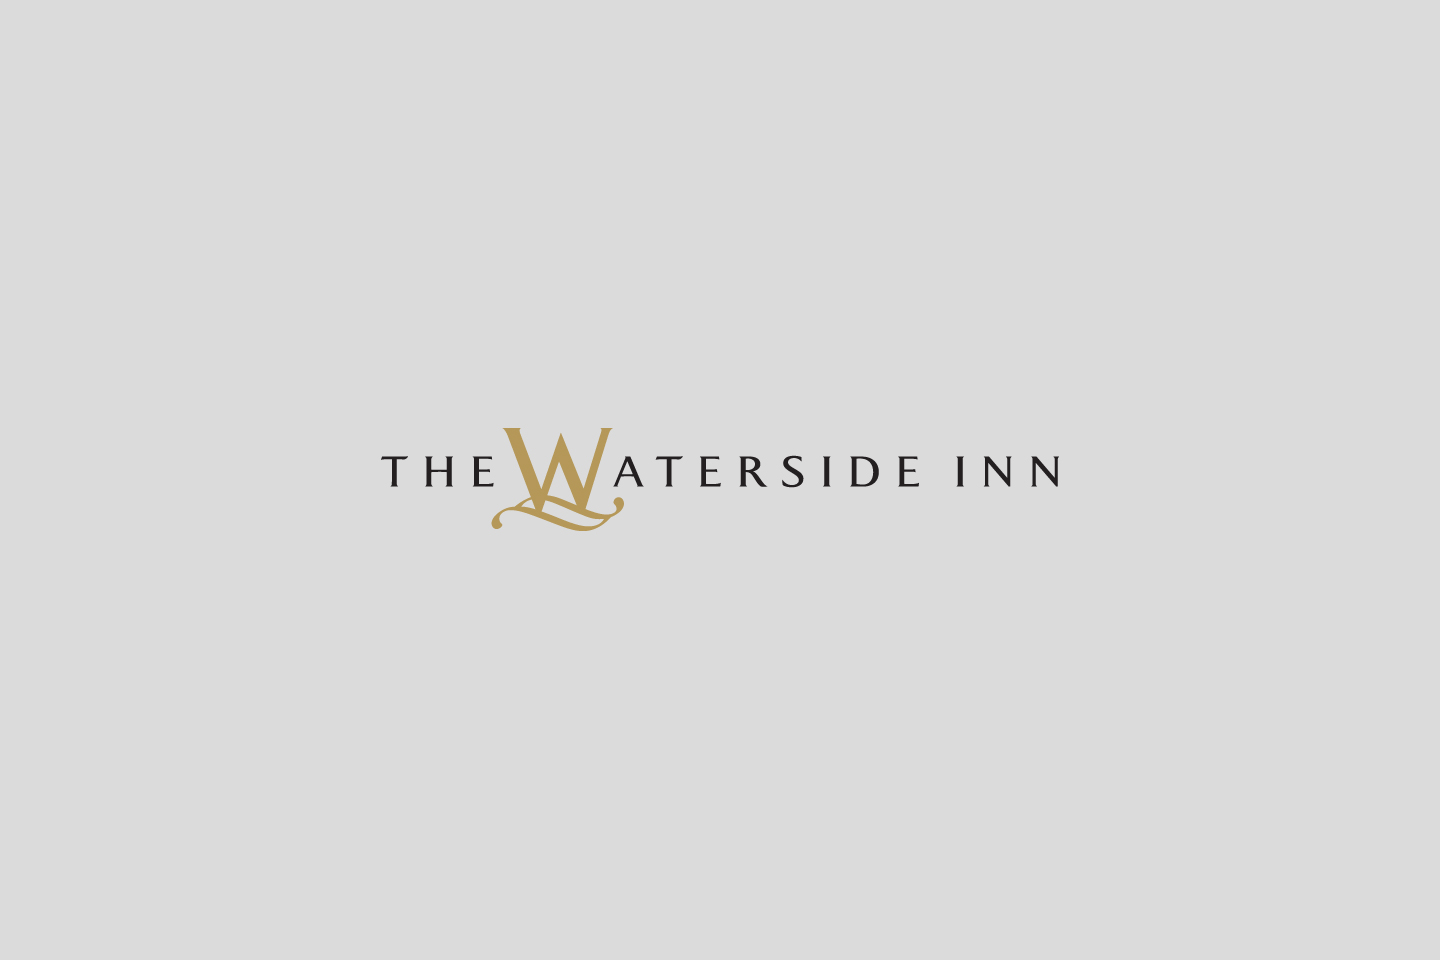 The Waterside Inn logo